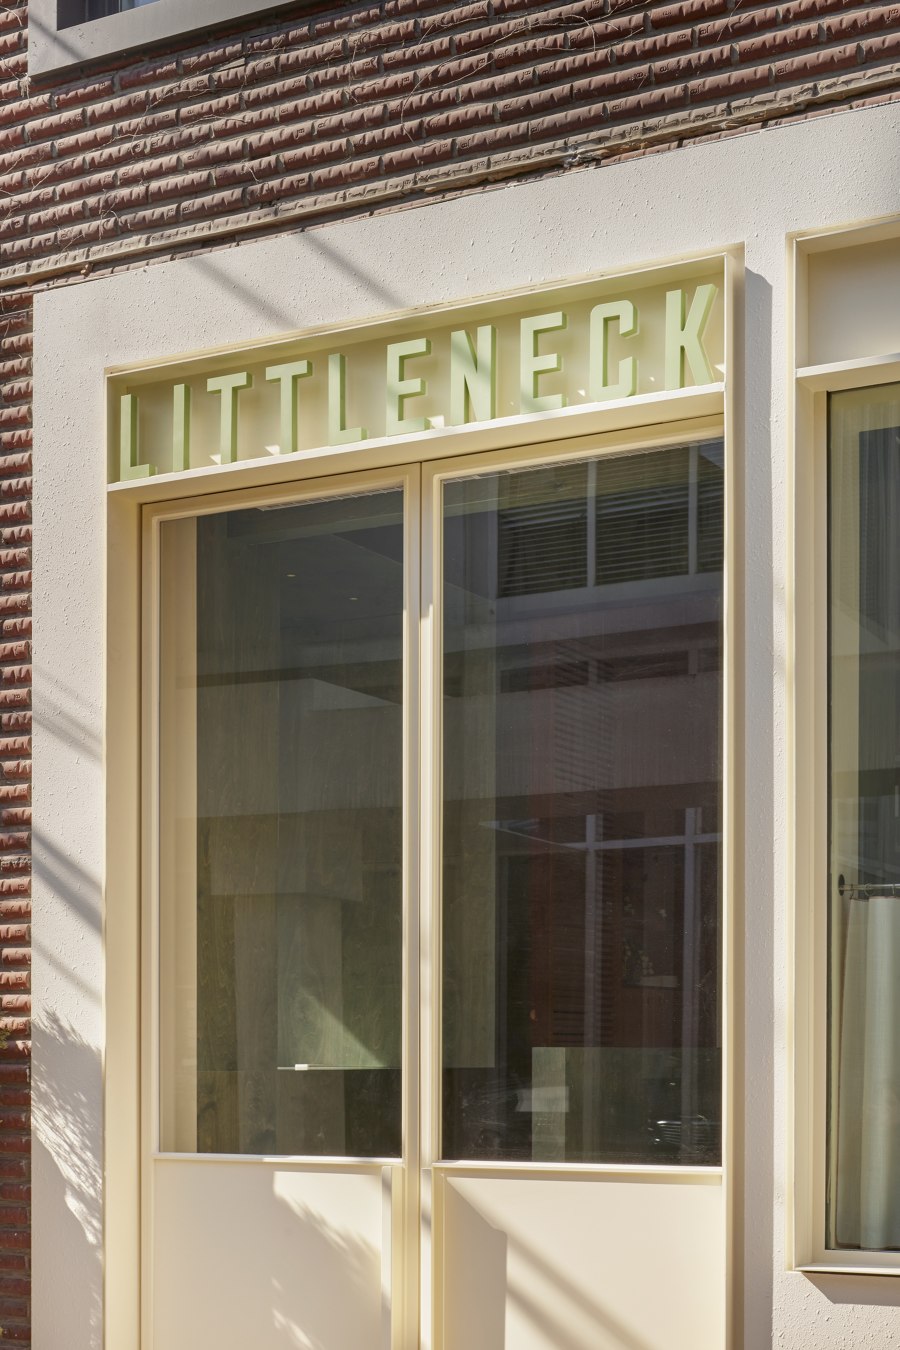 Littleneck Restaurant by SLA | Restaurant interiors